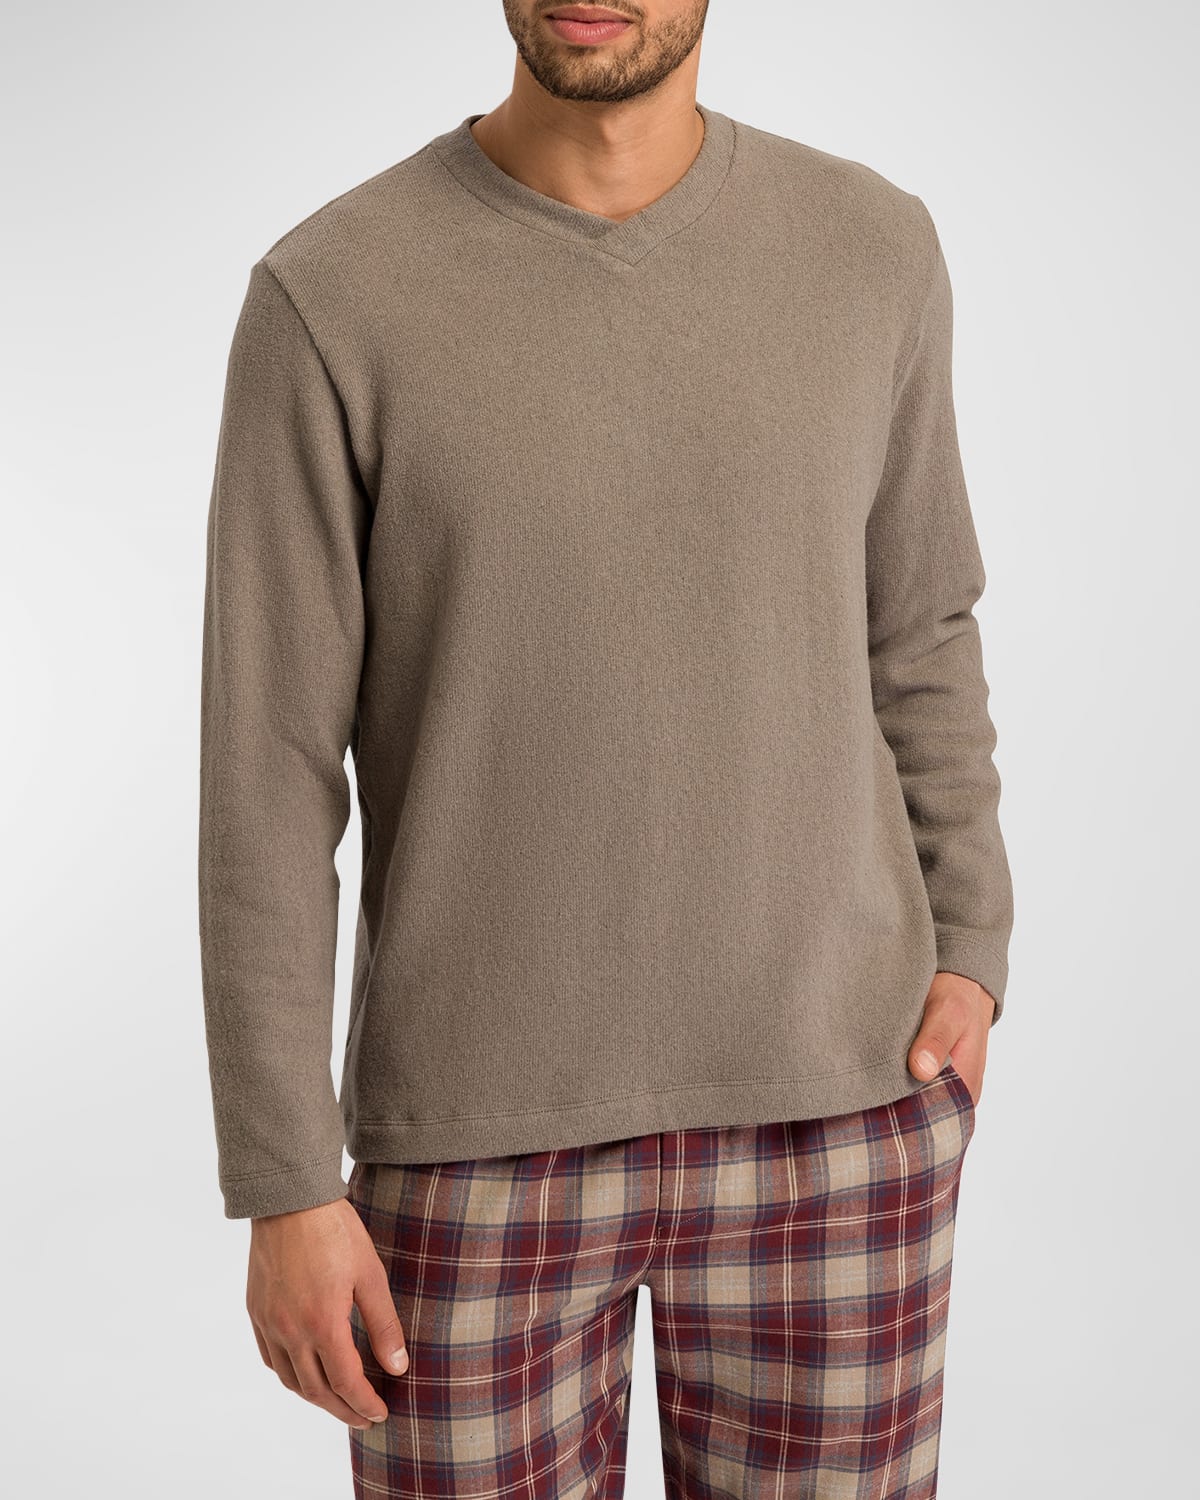 Men's Cozy Comfort Jersey T-Shirt